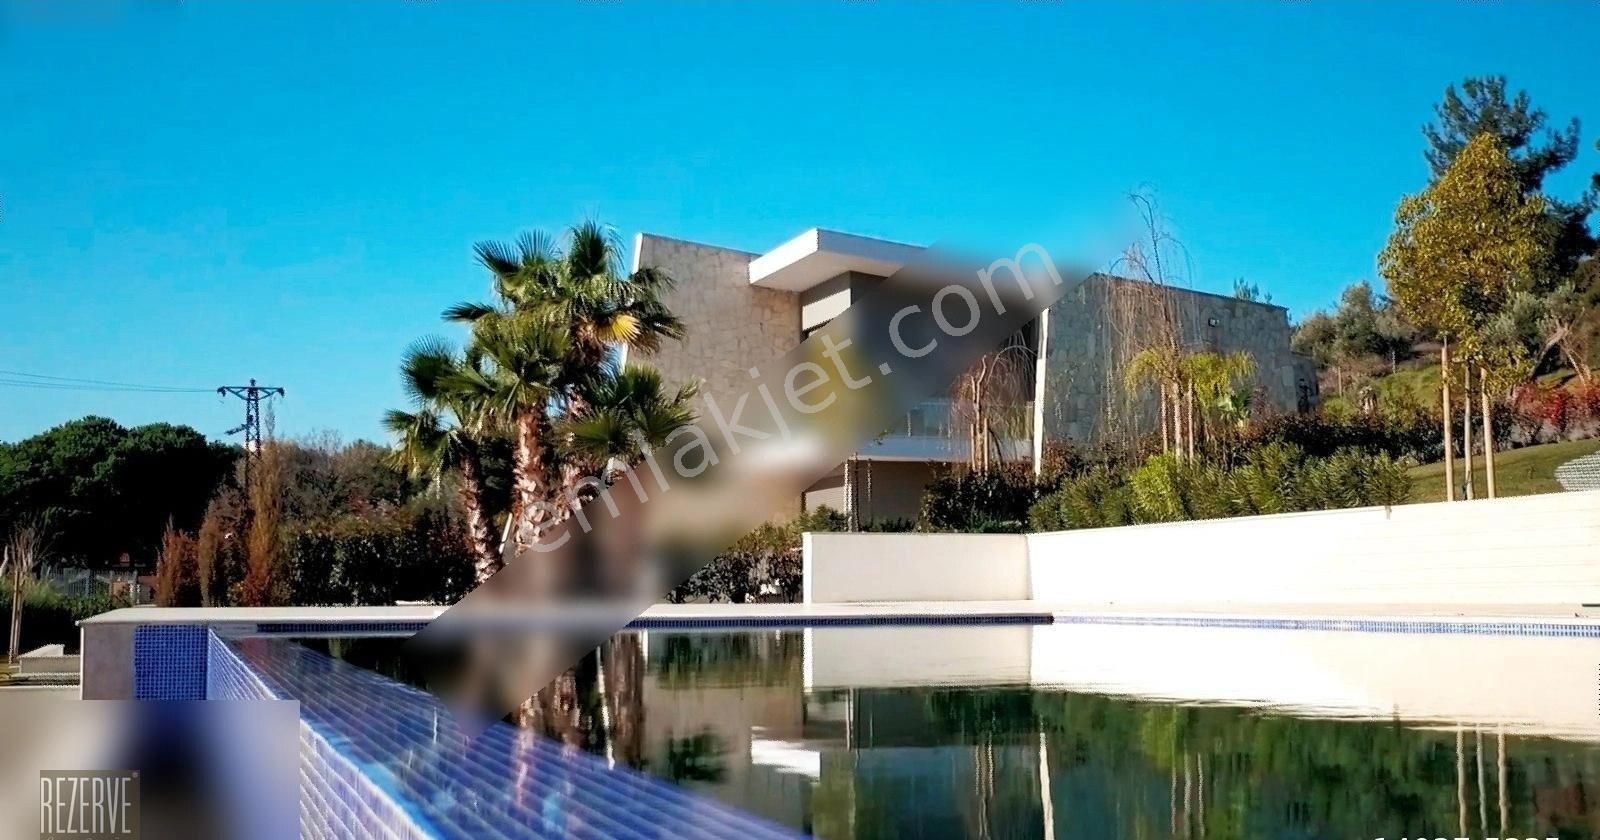 Urla Yenice Satılık Villa Urla Yenice'de, 3300 m2 Arsa İçinde Muhteşem Villa REZERVE'den